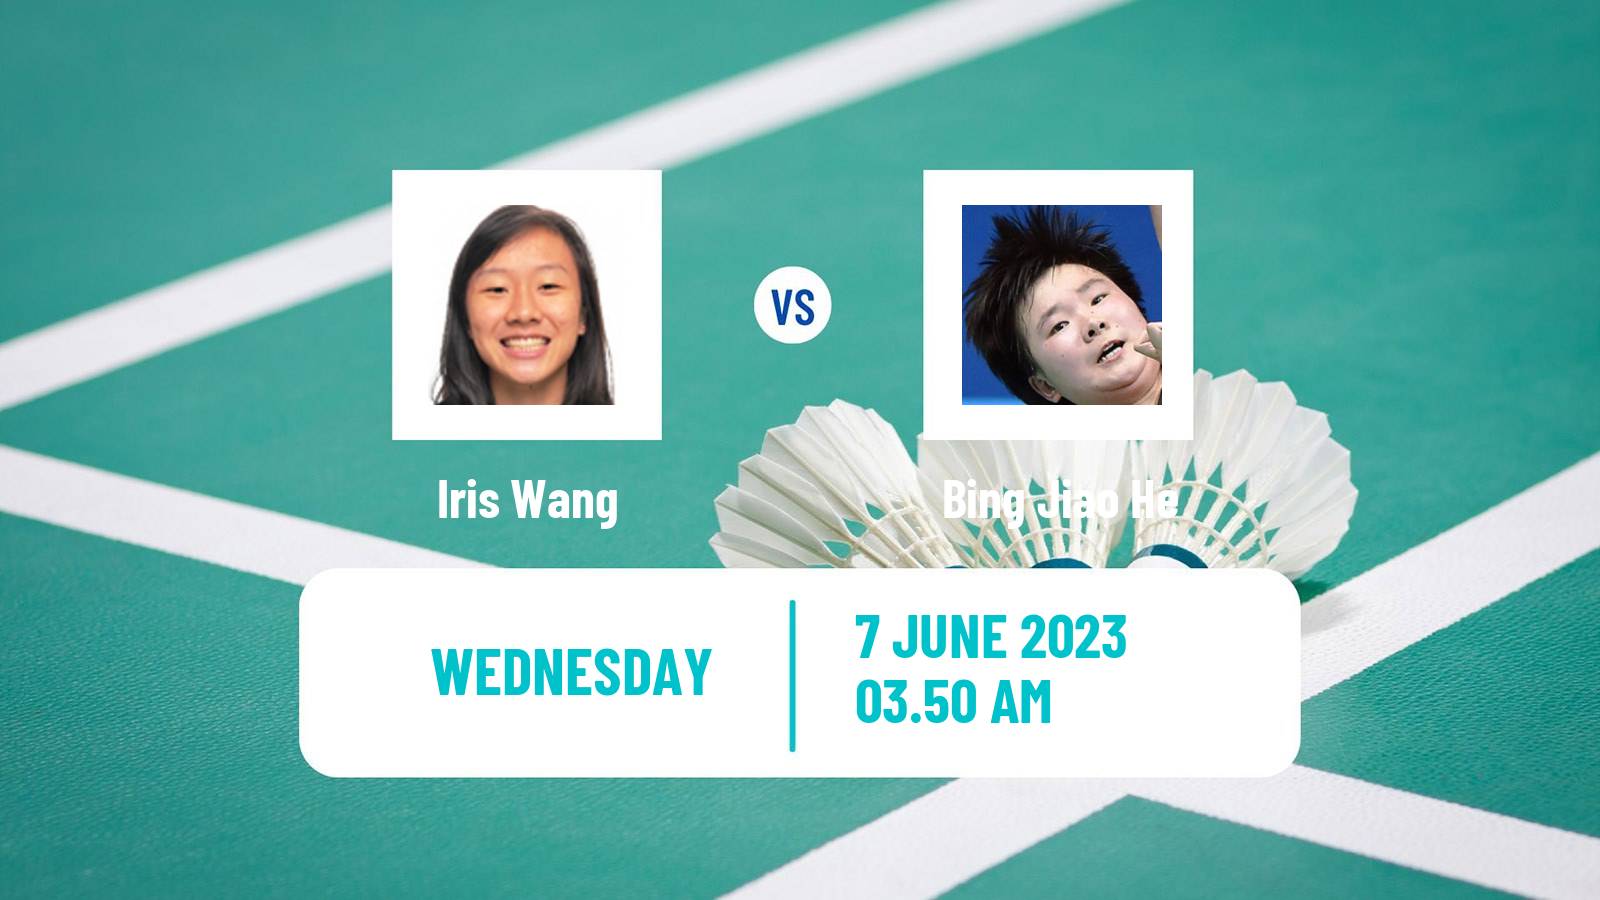 Badminton BWF World Tour Singapore Open Women Iris Wang - Bing Jiao He